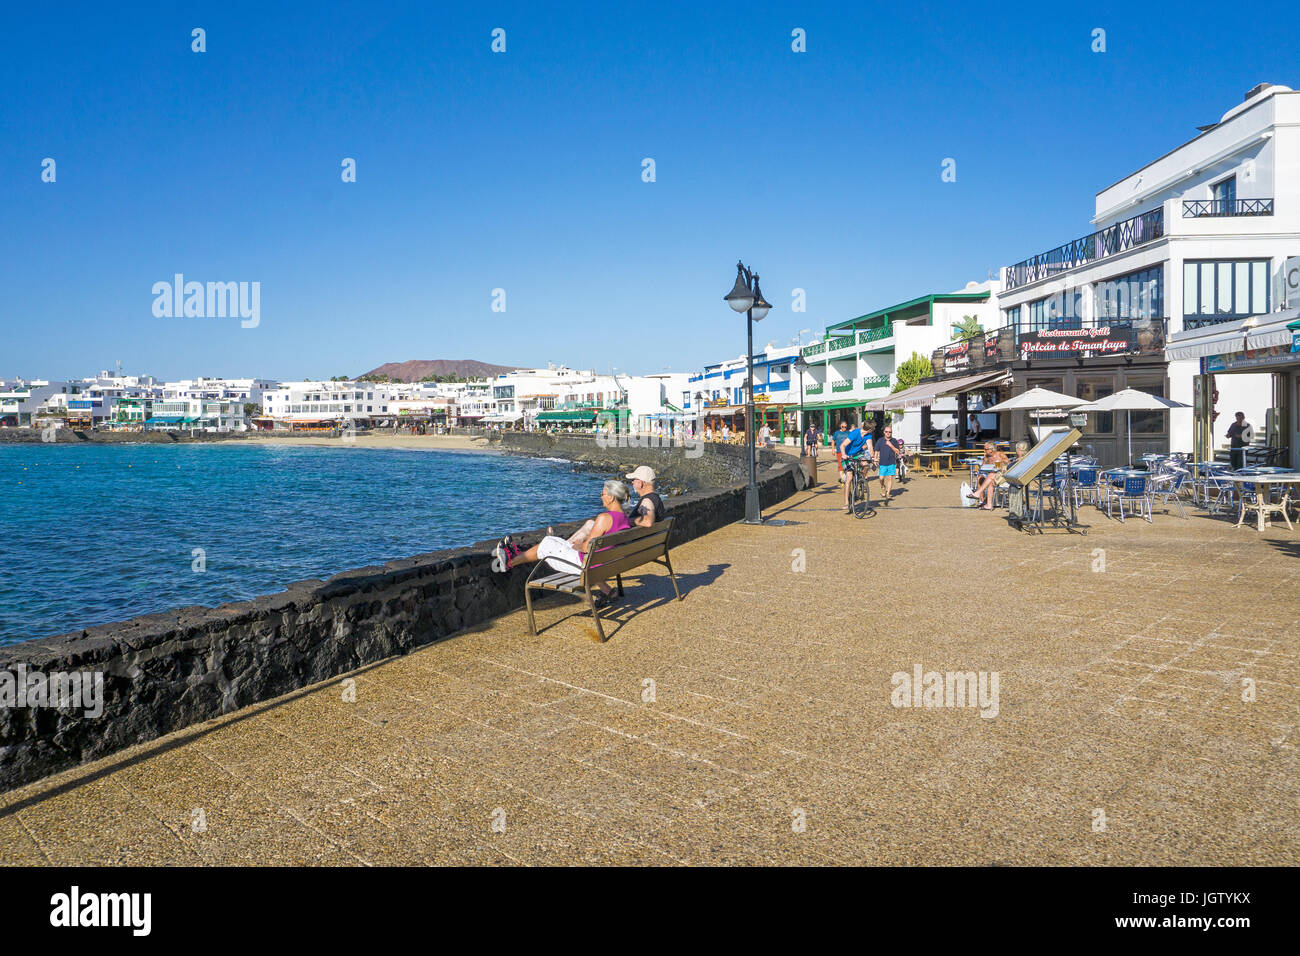 Promenade avec restaurants et magasins à Playa Blanca, Lanzarote, îles Canaries, Espagne, Europe Banque D'Images